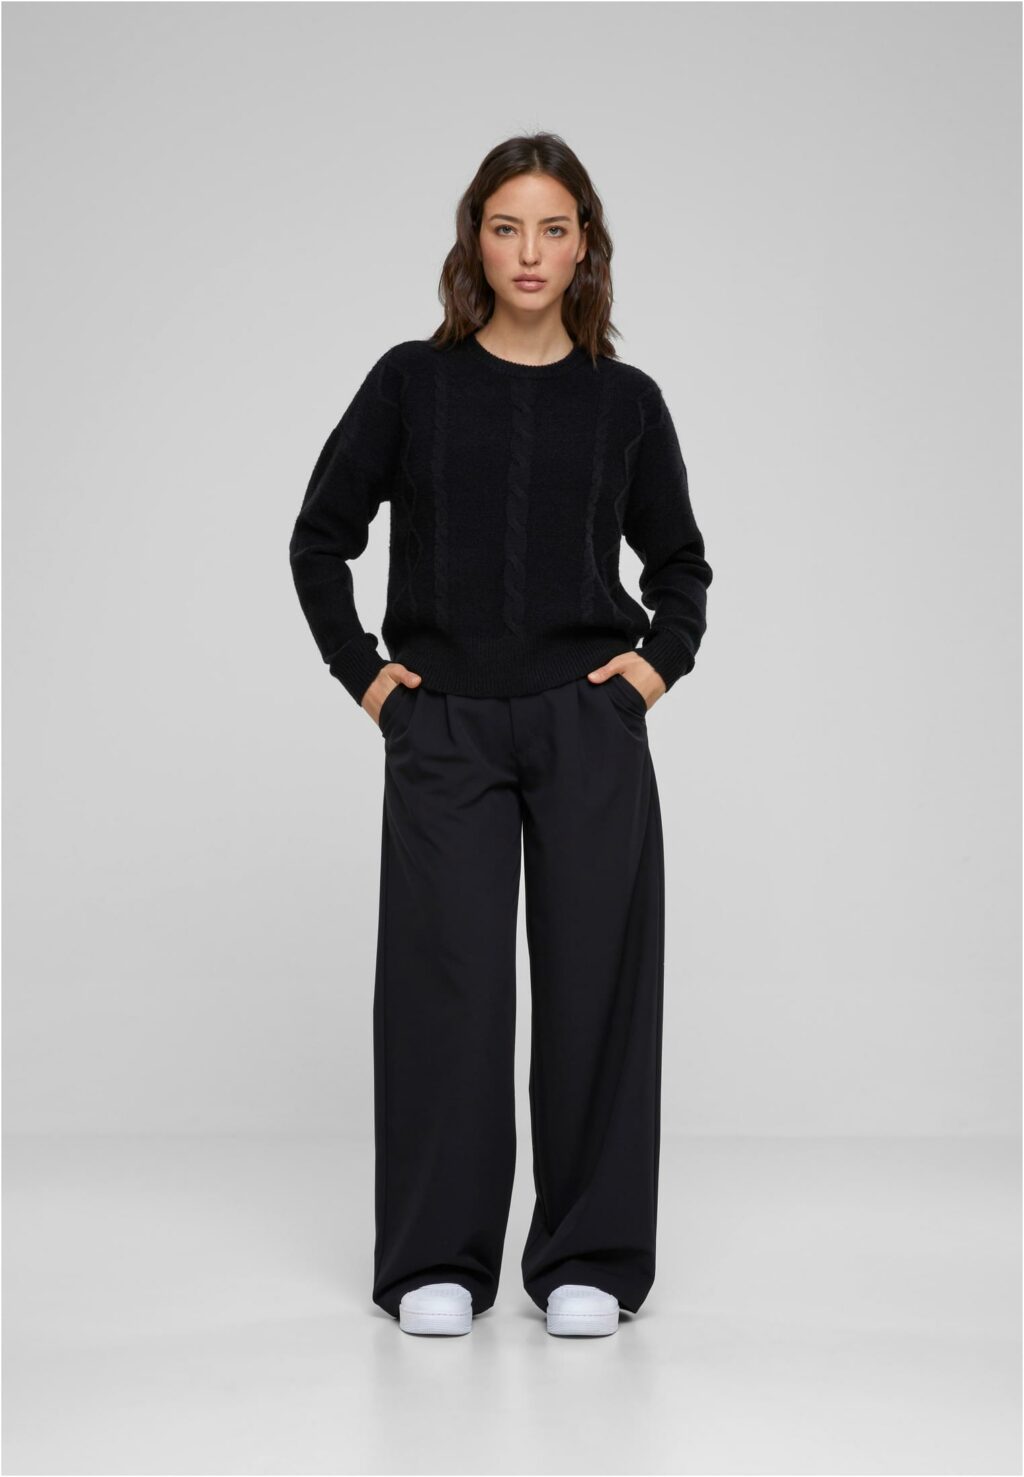 Urban Classics Ladies Cabel Knit Sweater black TB6139